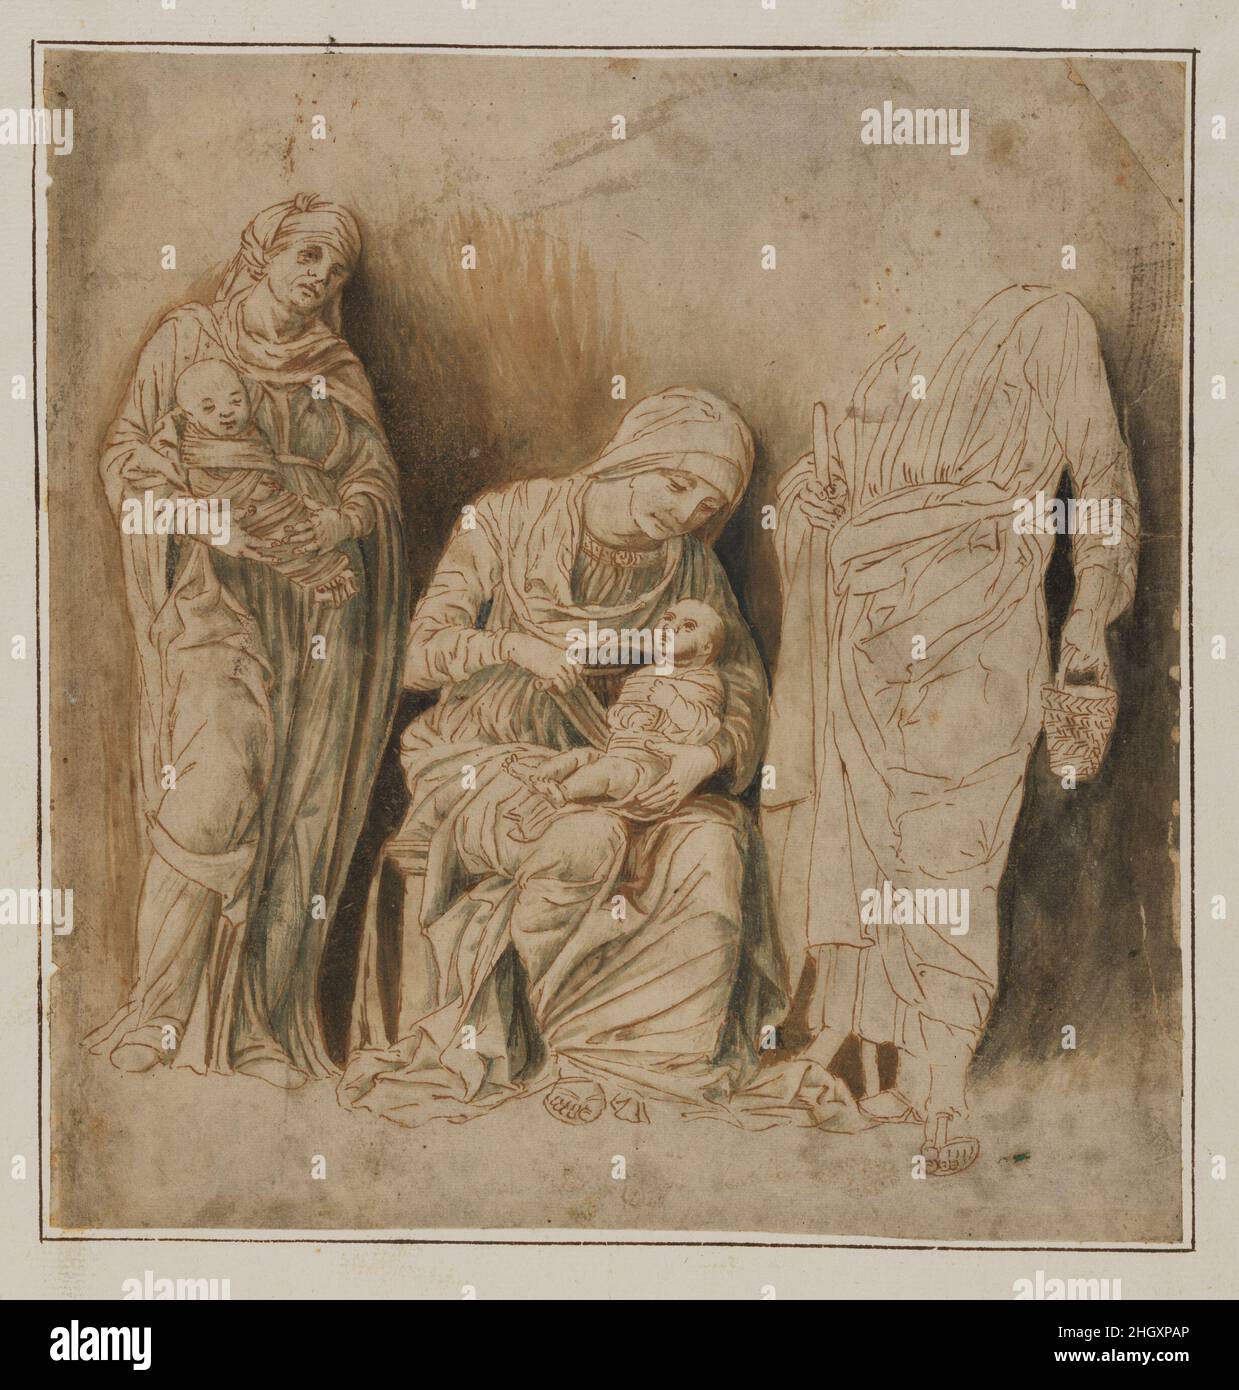 La Sainte famille avec Saint Elizabeth et le bébé Jean-Baptiste début 16th siècle Follower d'Andrea Mantegna la composition de ce dessin est étroitement liée à une rare gravure attribuée à Giovanni Maria da Brescia, le disciple d'Andrea Mantegna.Il peut s'agir d'un exemple, non rare en Vénétie, d'une feuille non finie exécutée en préparation d'une gravure.La technique plutôt raide, schématique de stylo peut être expliquée comme une tentative de guider le graveur travaillant avec un burin.La Sainte famille avec Saint Elizabeth et le bébé Jean-Baptiste.Disciple d'Andrea Mantegna (Ital Banque D'Images